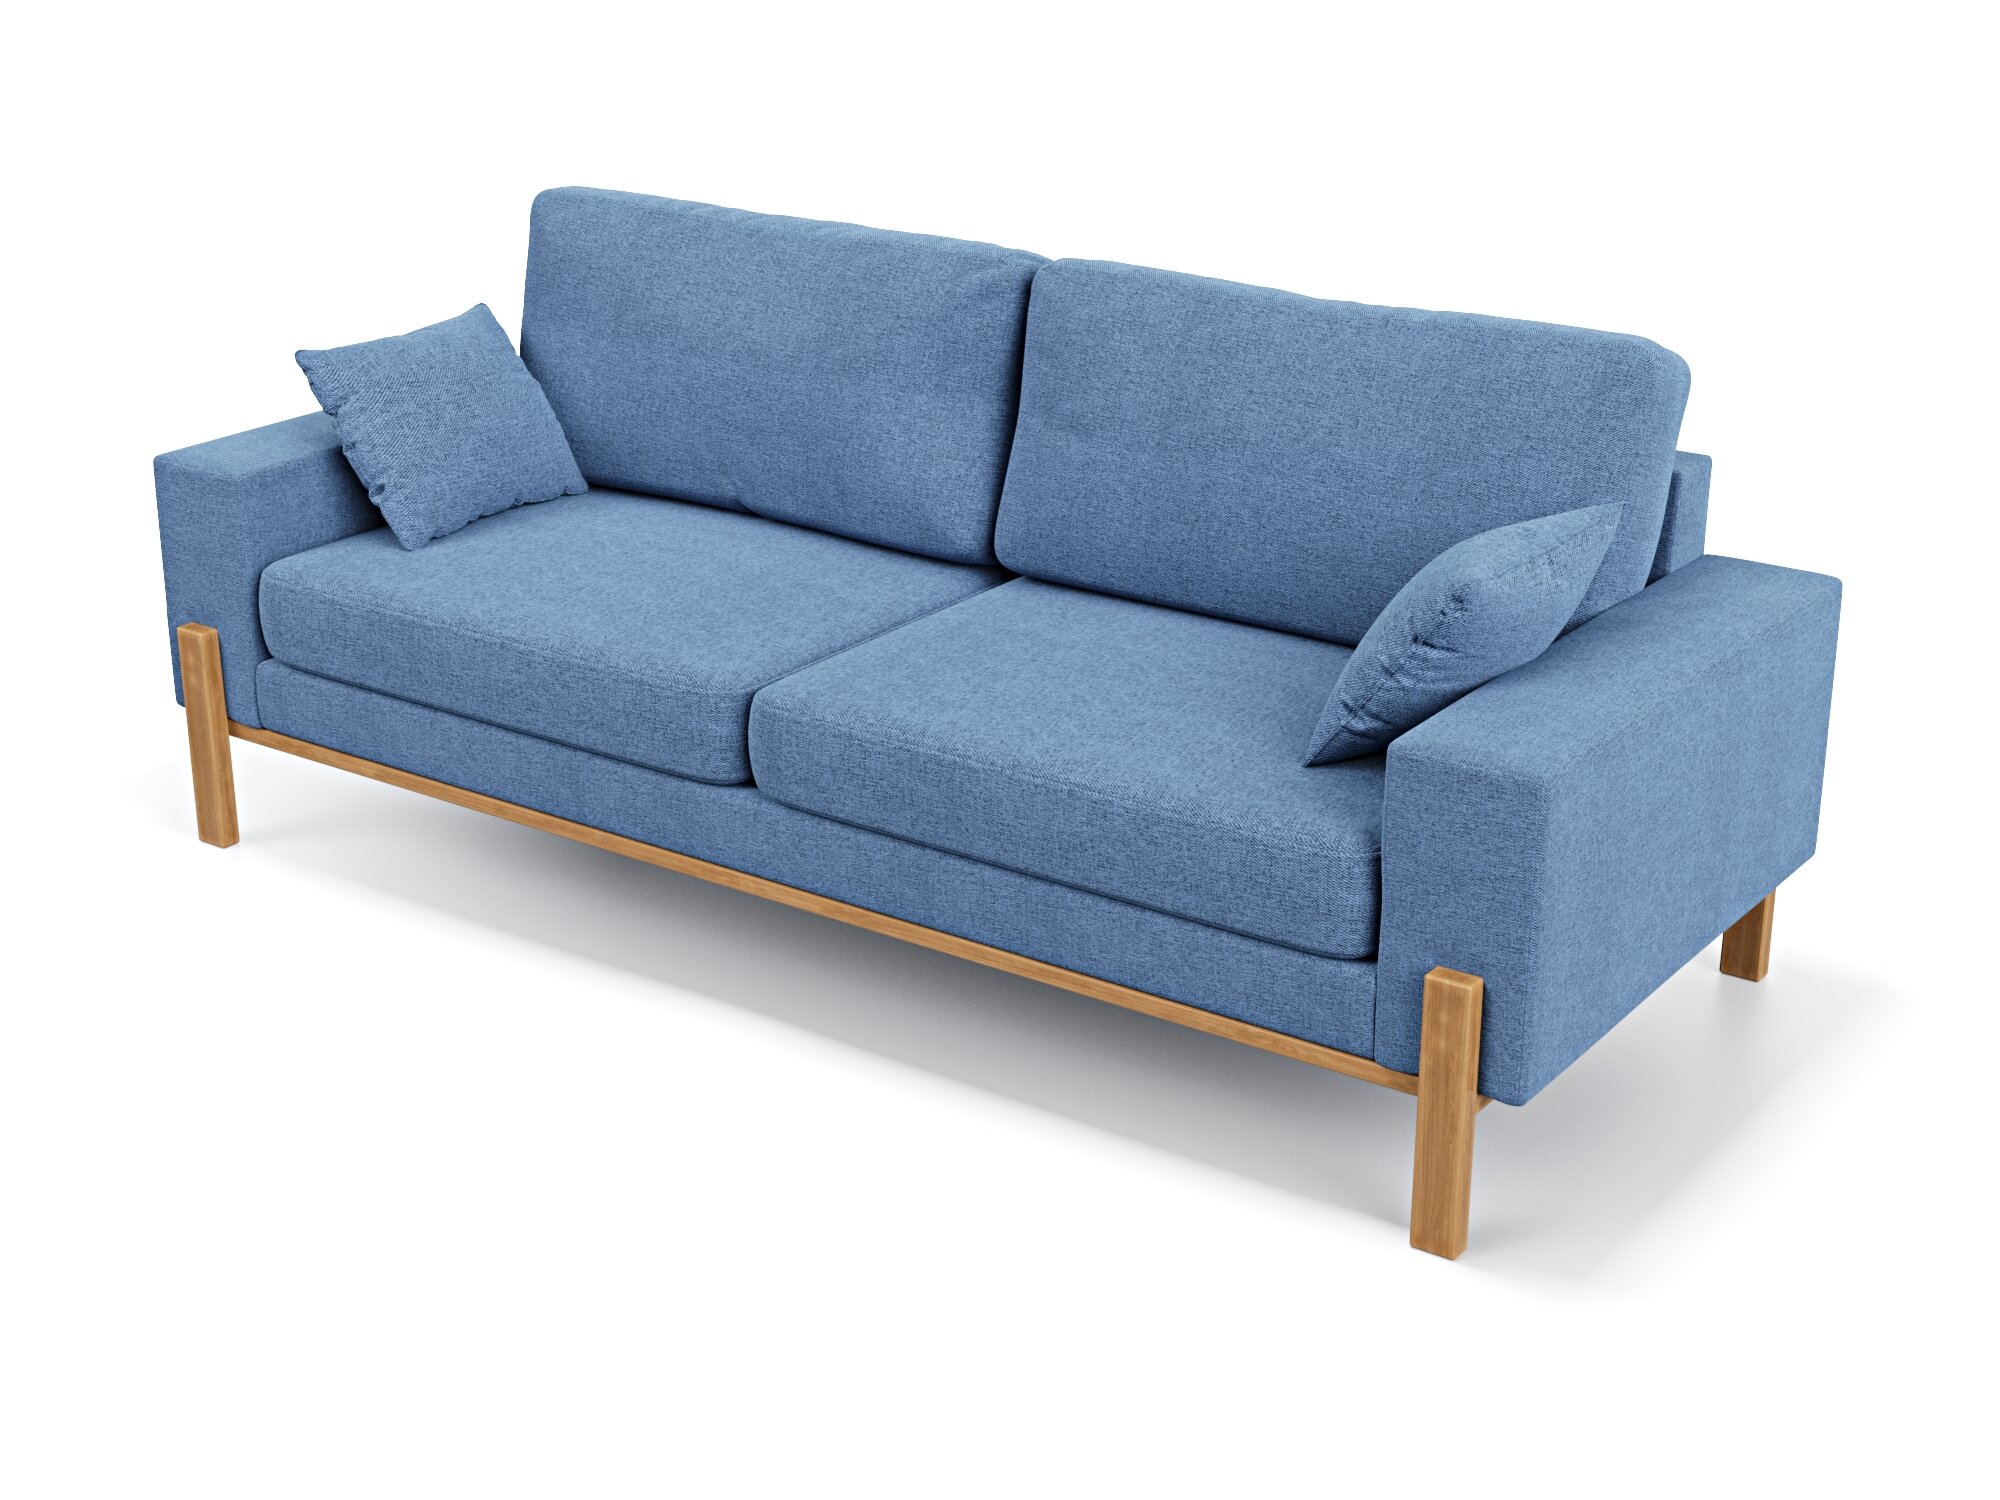 Прямой дизайнерский диван Soft Element Хангель, трехместный, массив дерева, рогожка, синий, стиль скандинавский лофт, в гостиную, на дачу